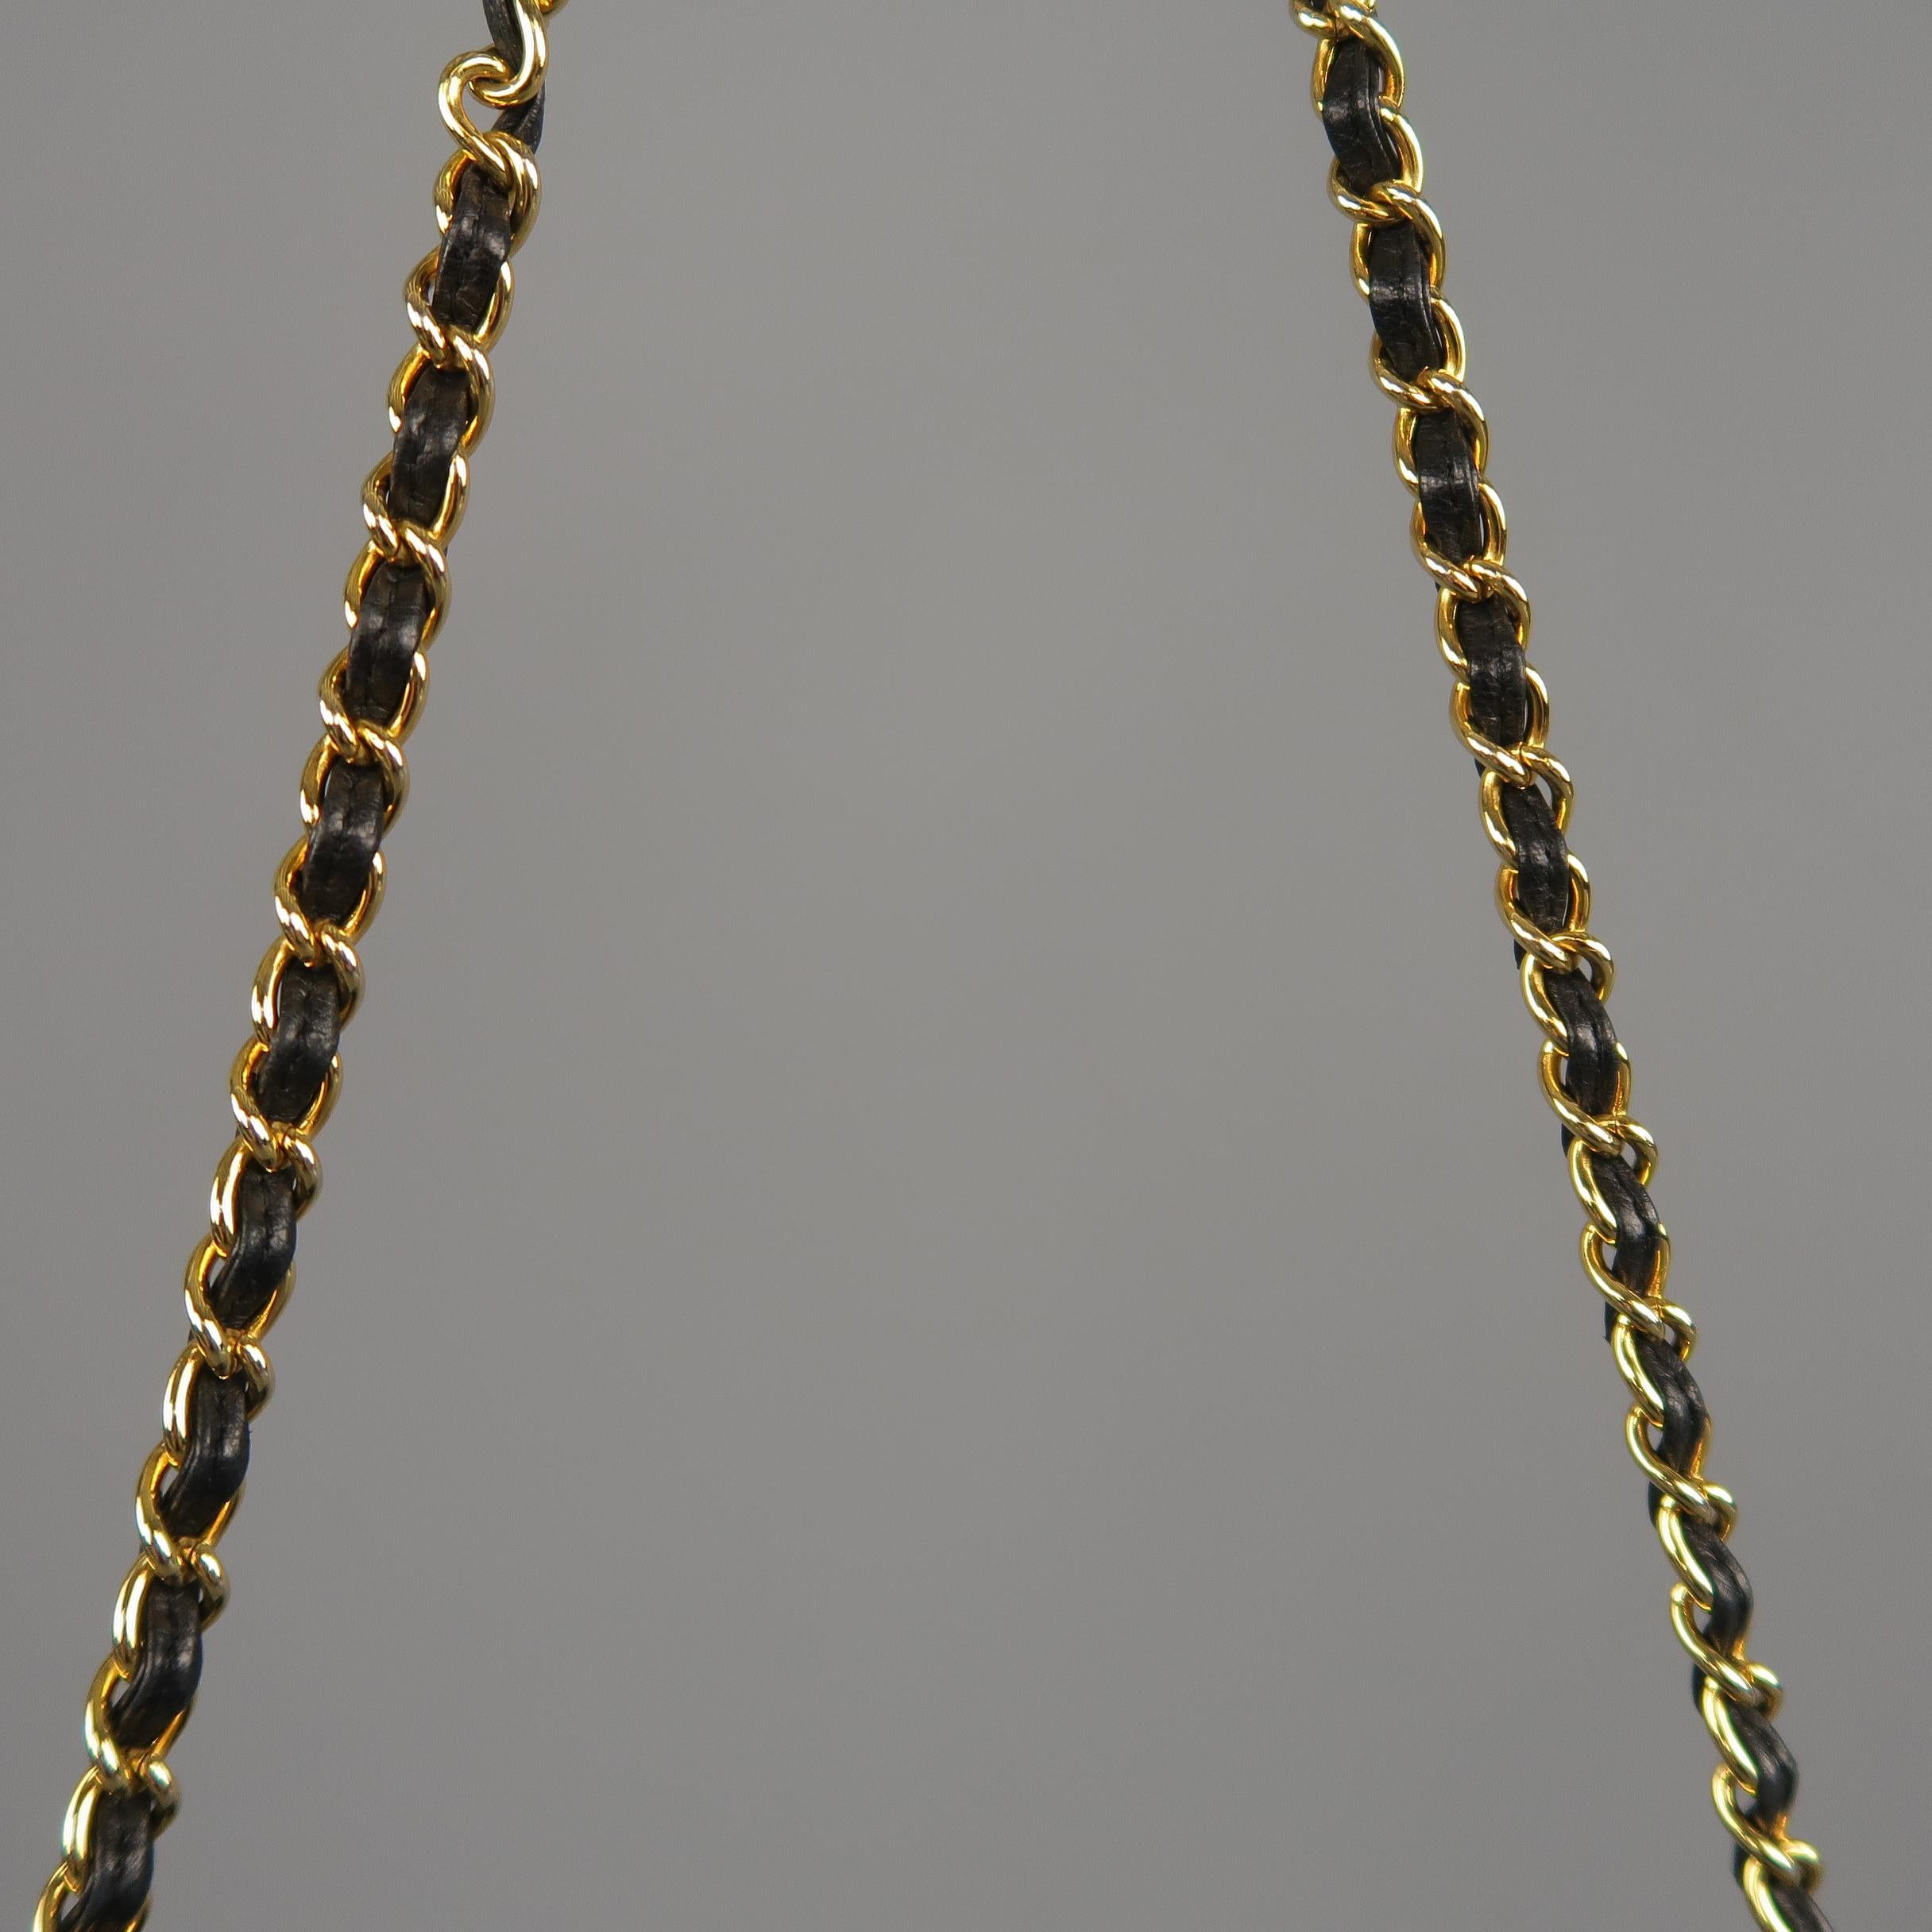 Vintage CHANEL Black Quilted Lizard Leather Gold Chain Strap Shoulder Handbag 4